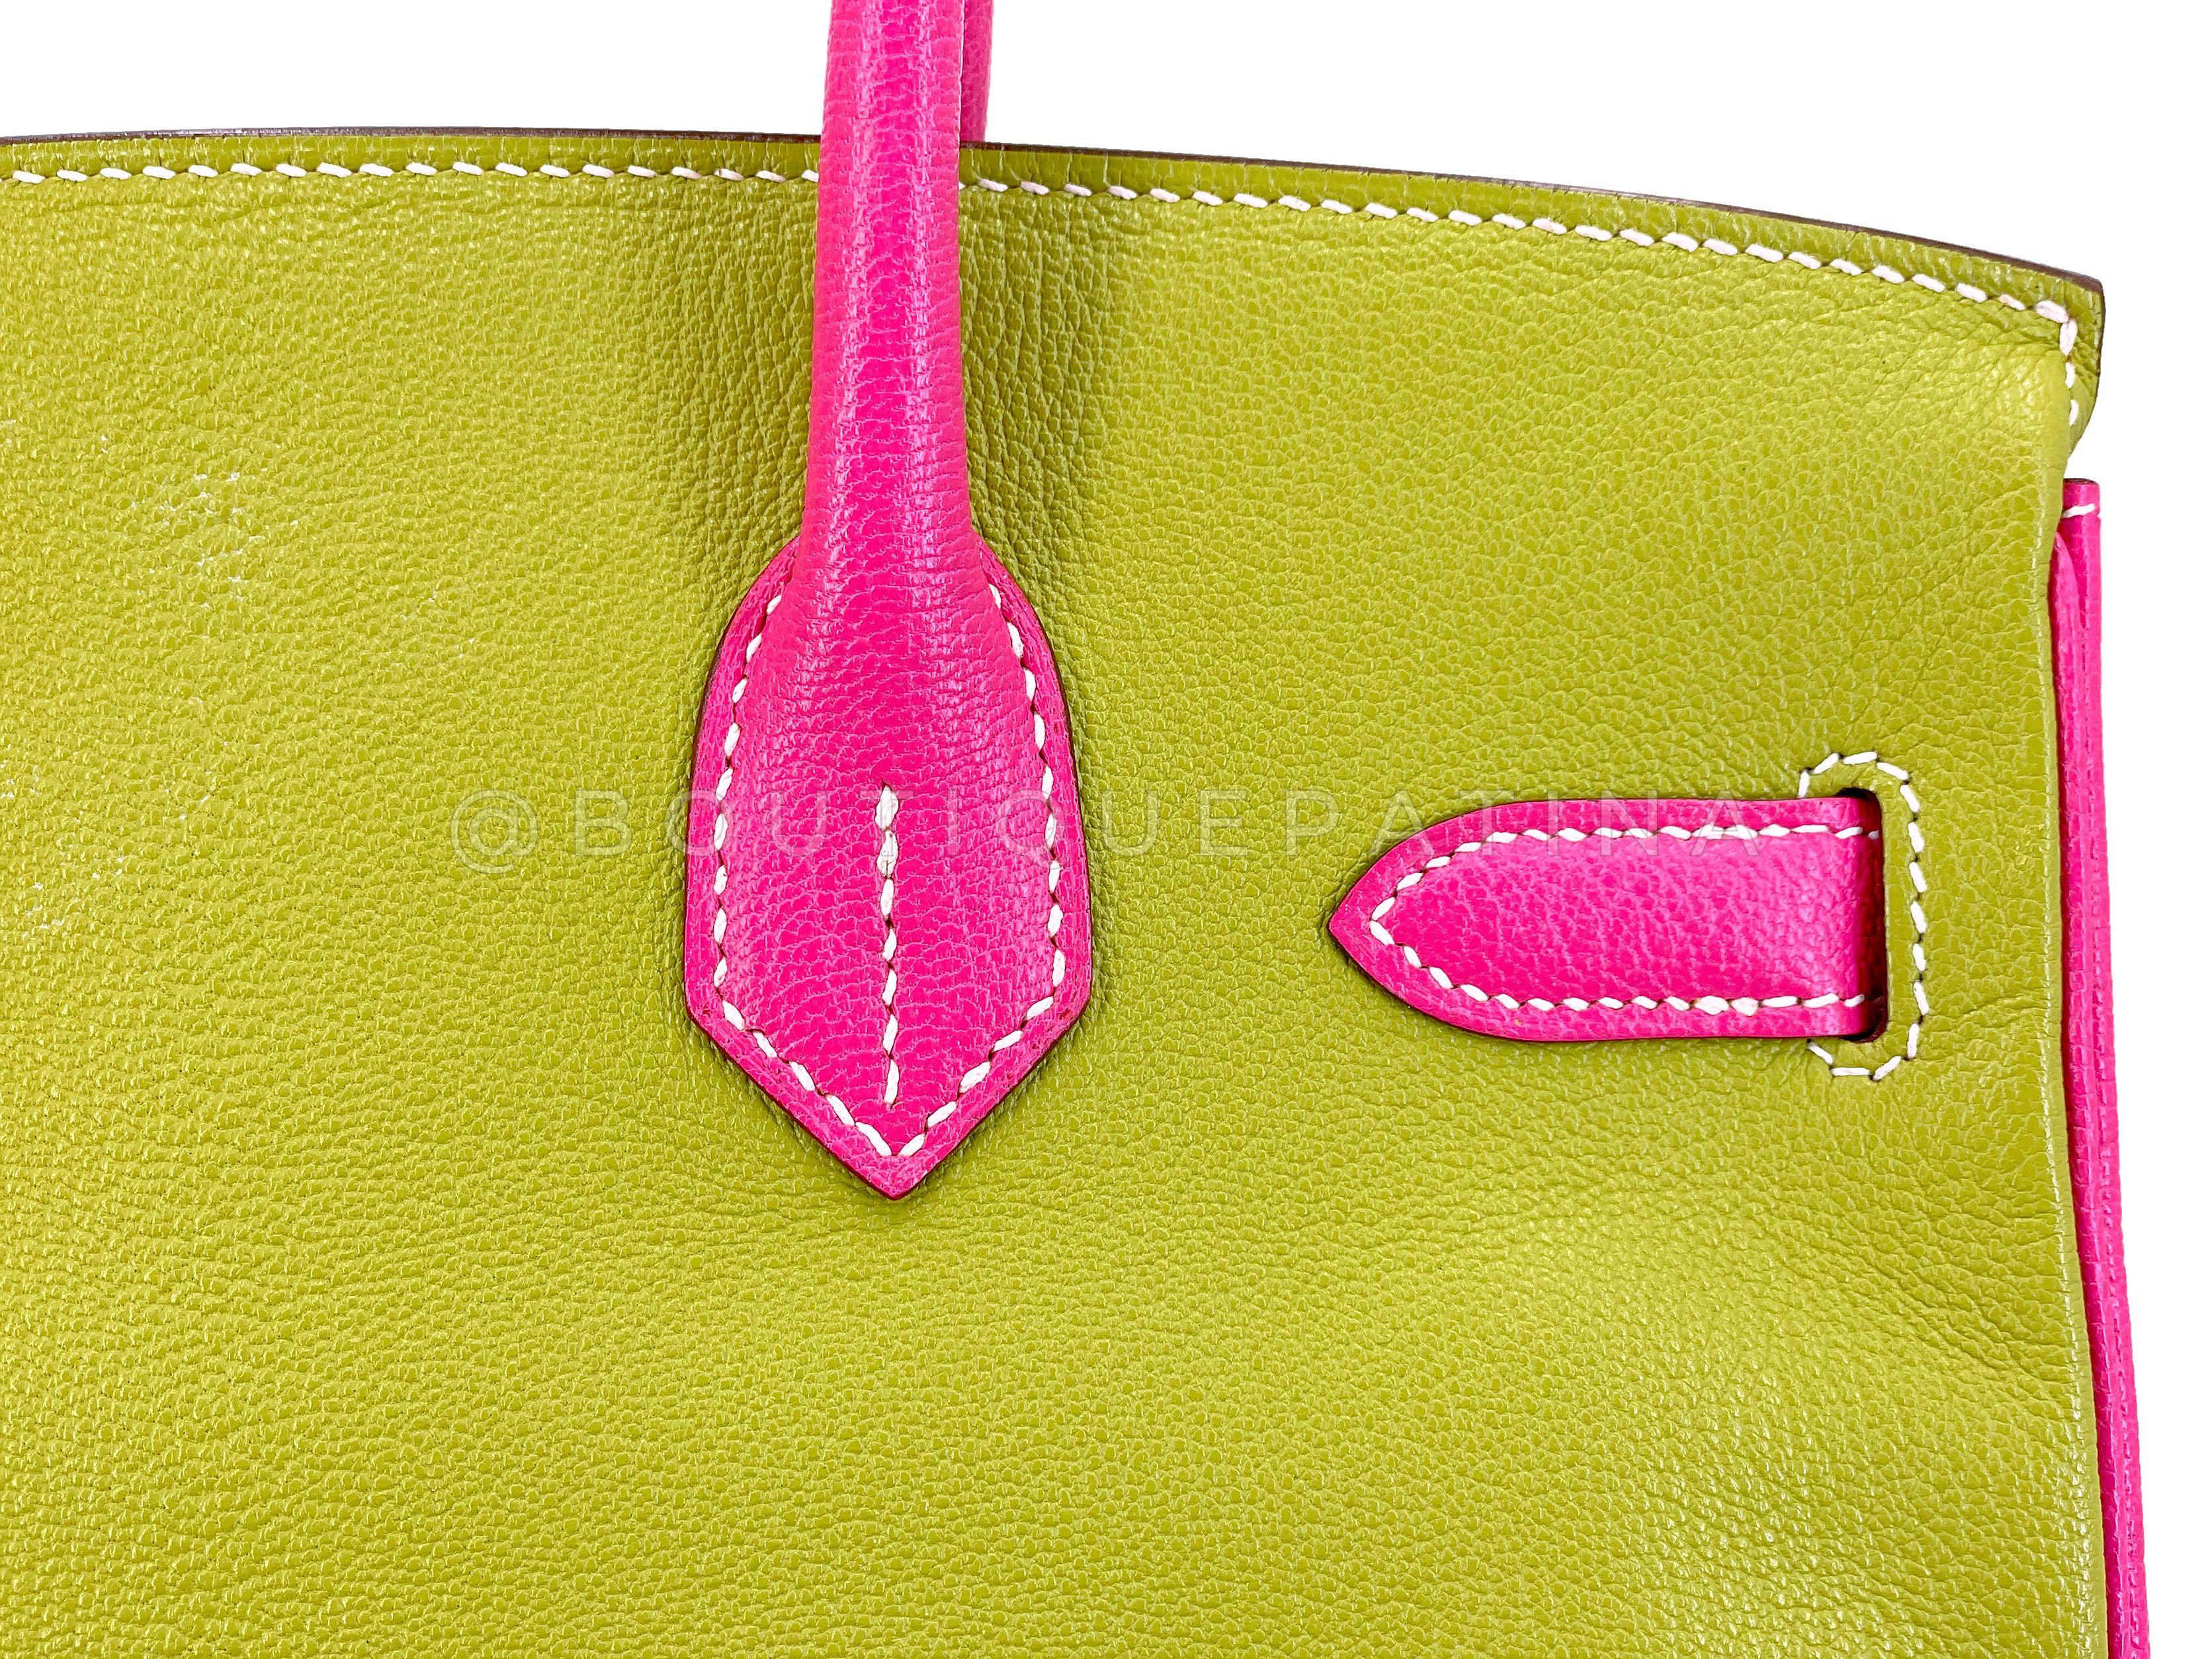 Hermès Special Order Chèvre 30cm Birkin Brushed Gold Pink Green Blue Bag 68121 For Sale 7